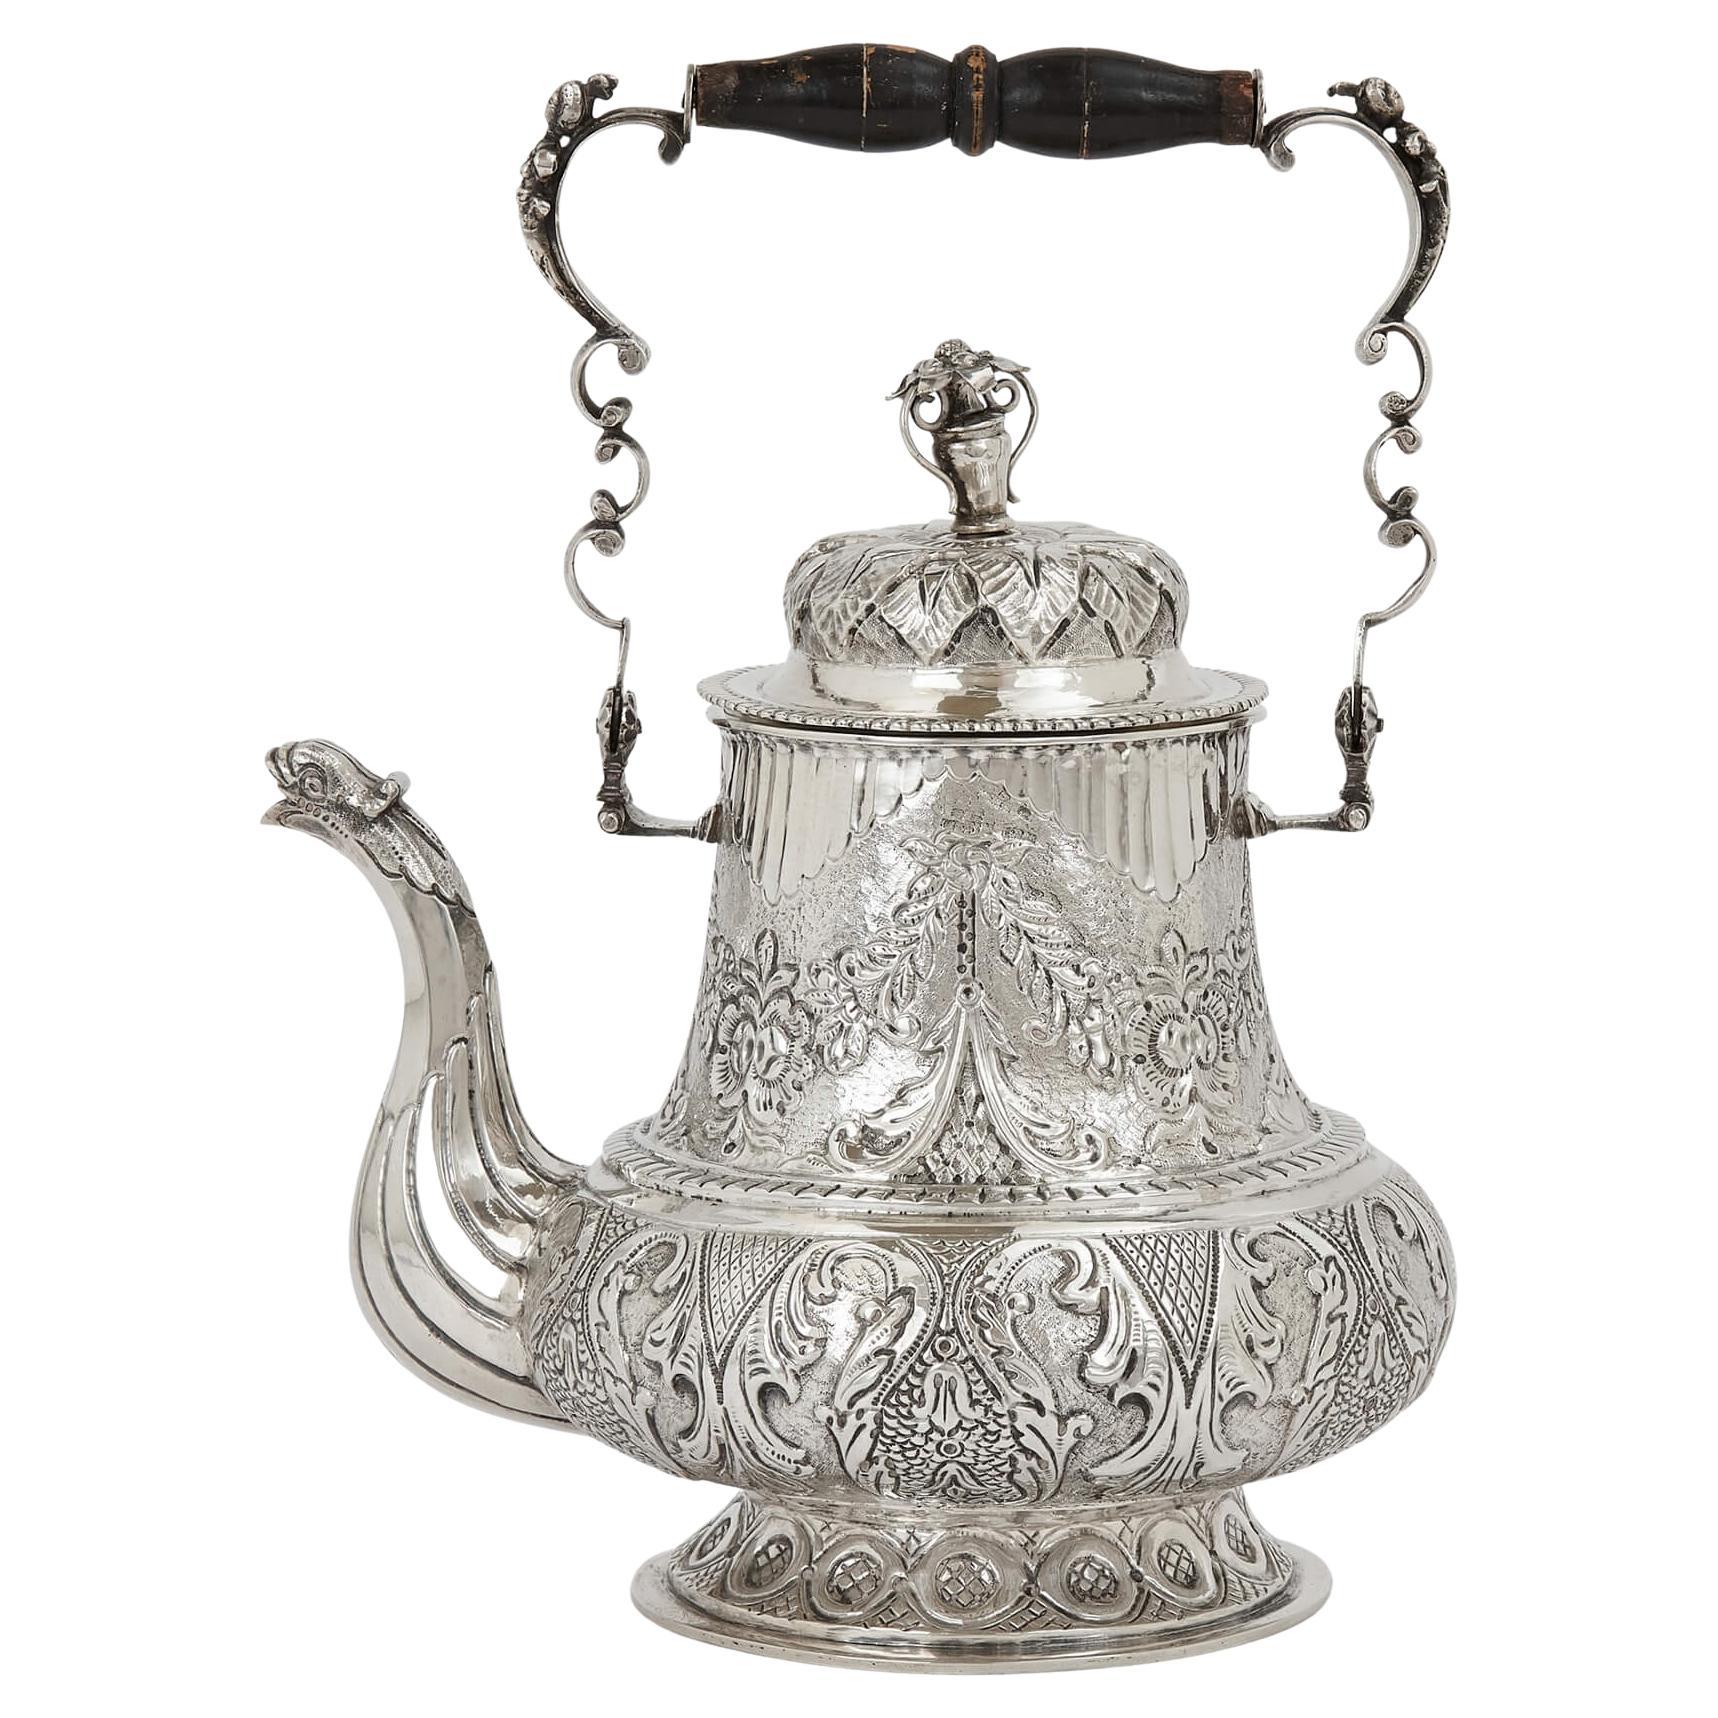 Antique Swedish Repoussé and Engraved Silver Teapot